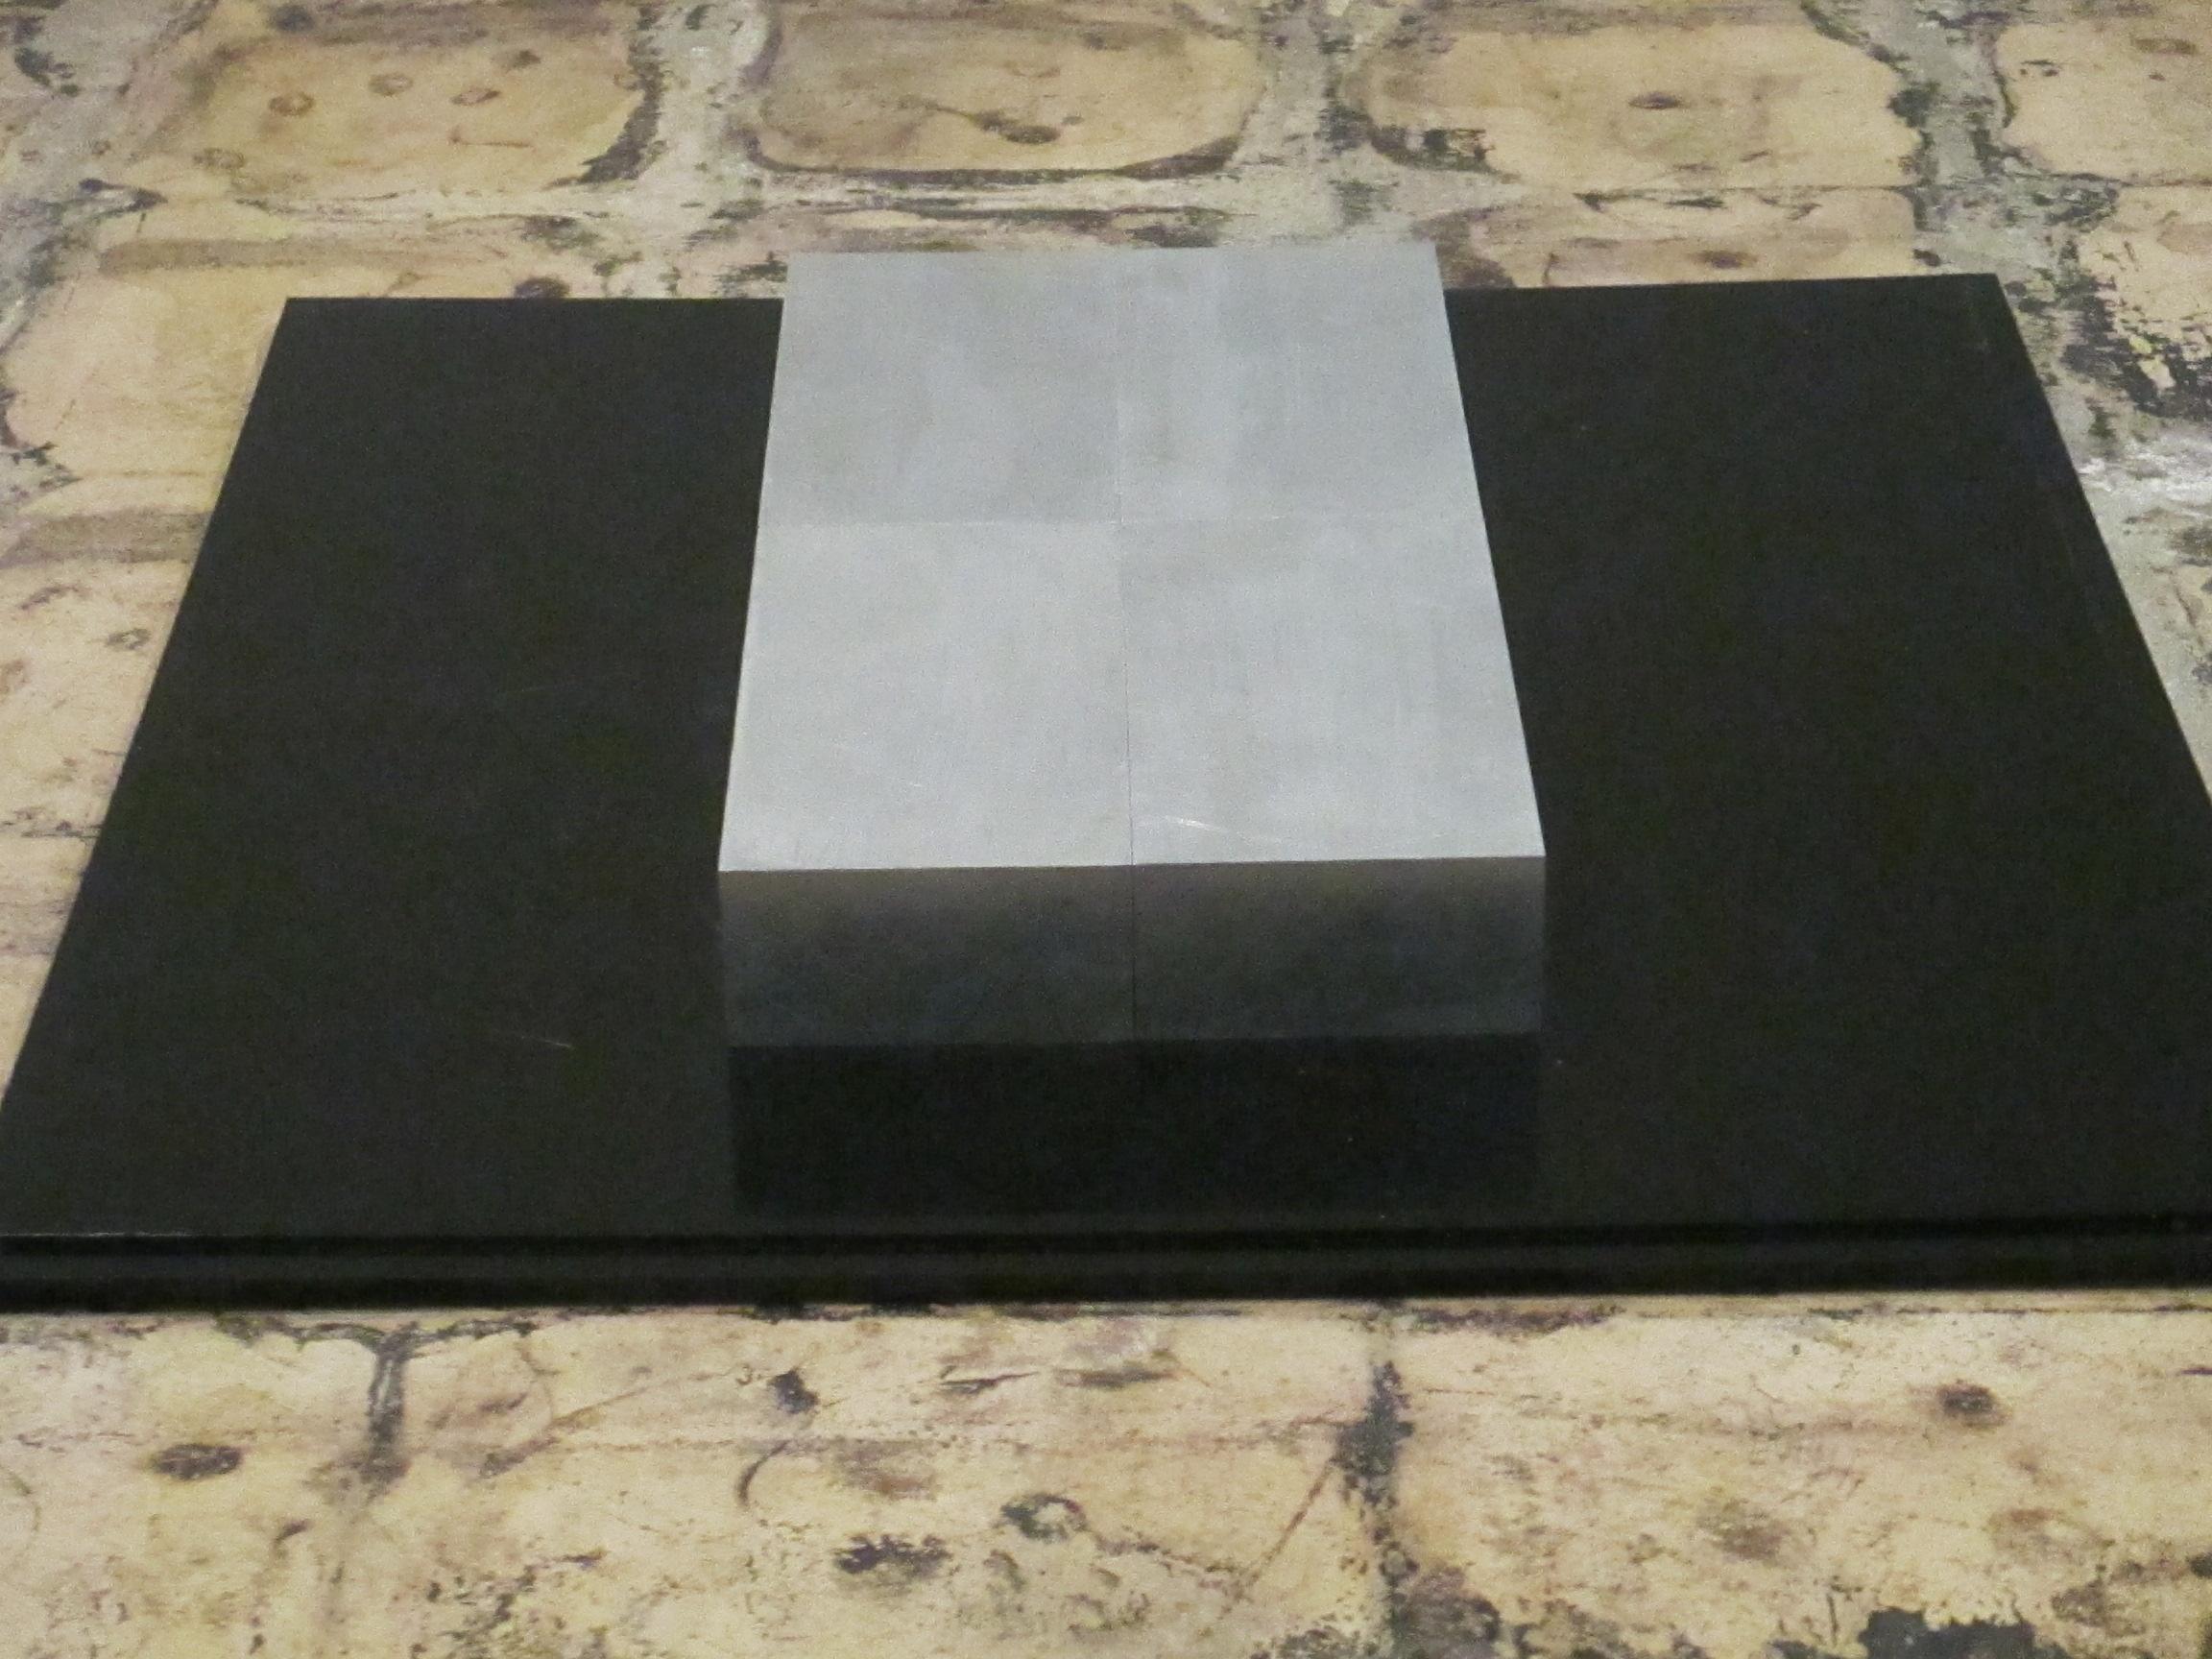 Aluminiumblöcke mit 4 Blöcken, in 4 Teilen (Grau), Abstract Sculpture, von Carl Andre